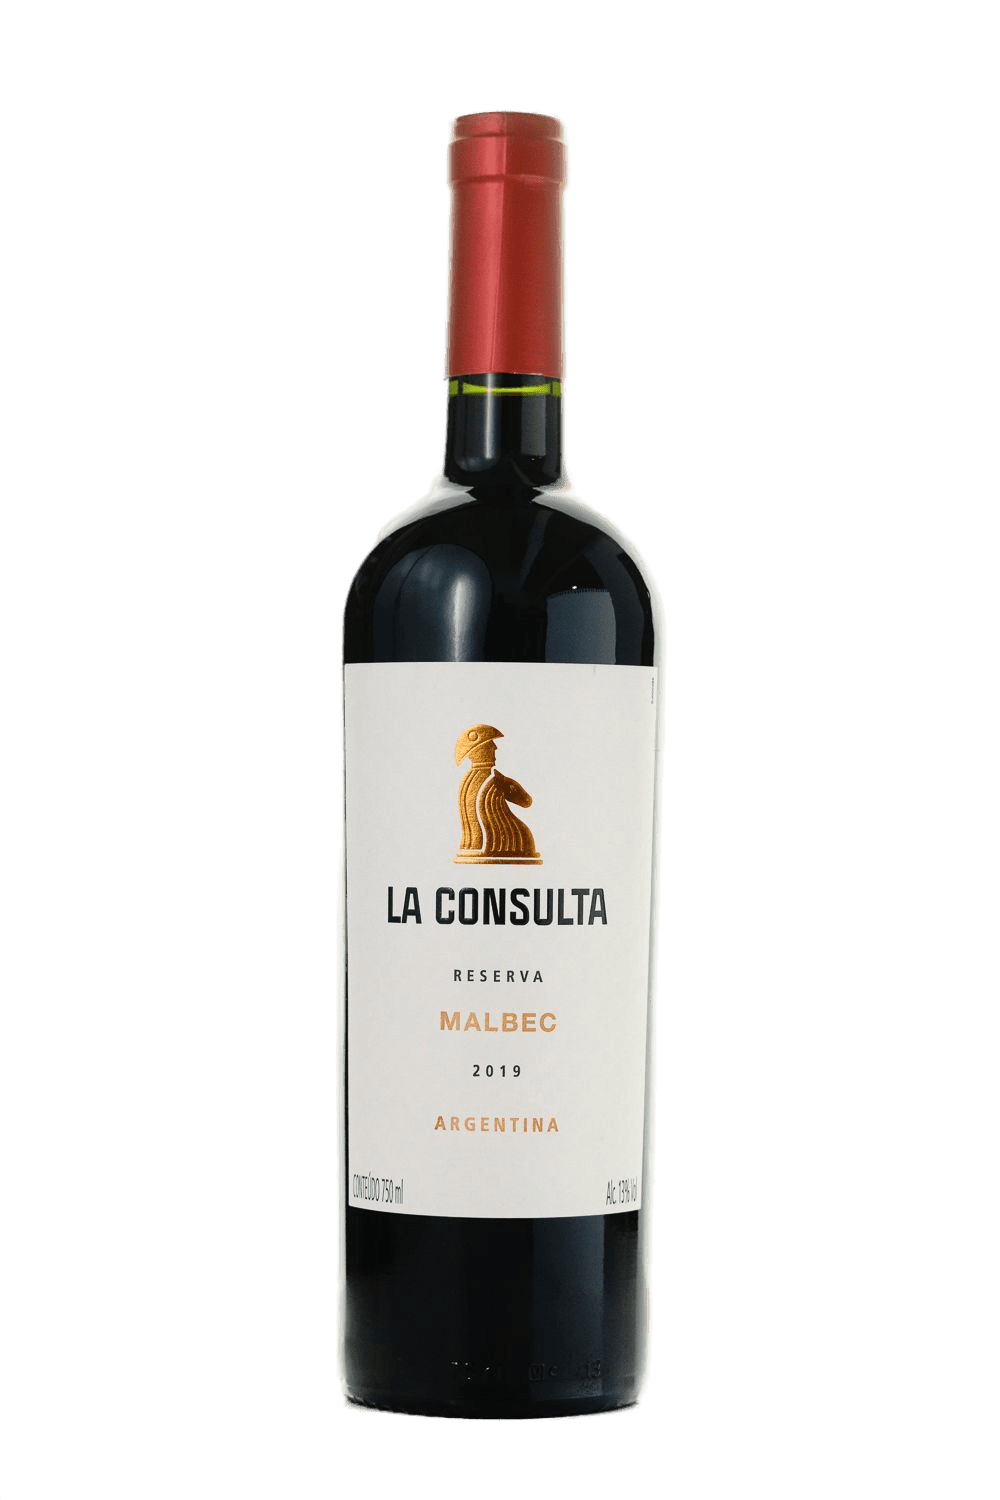 La Consulta - Reserva Malbec 2019 - The Blend Wines